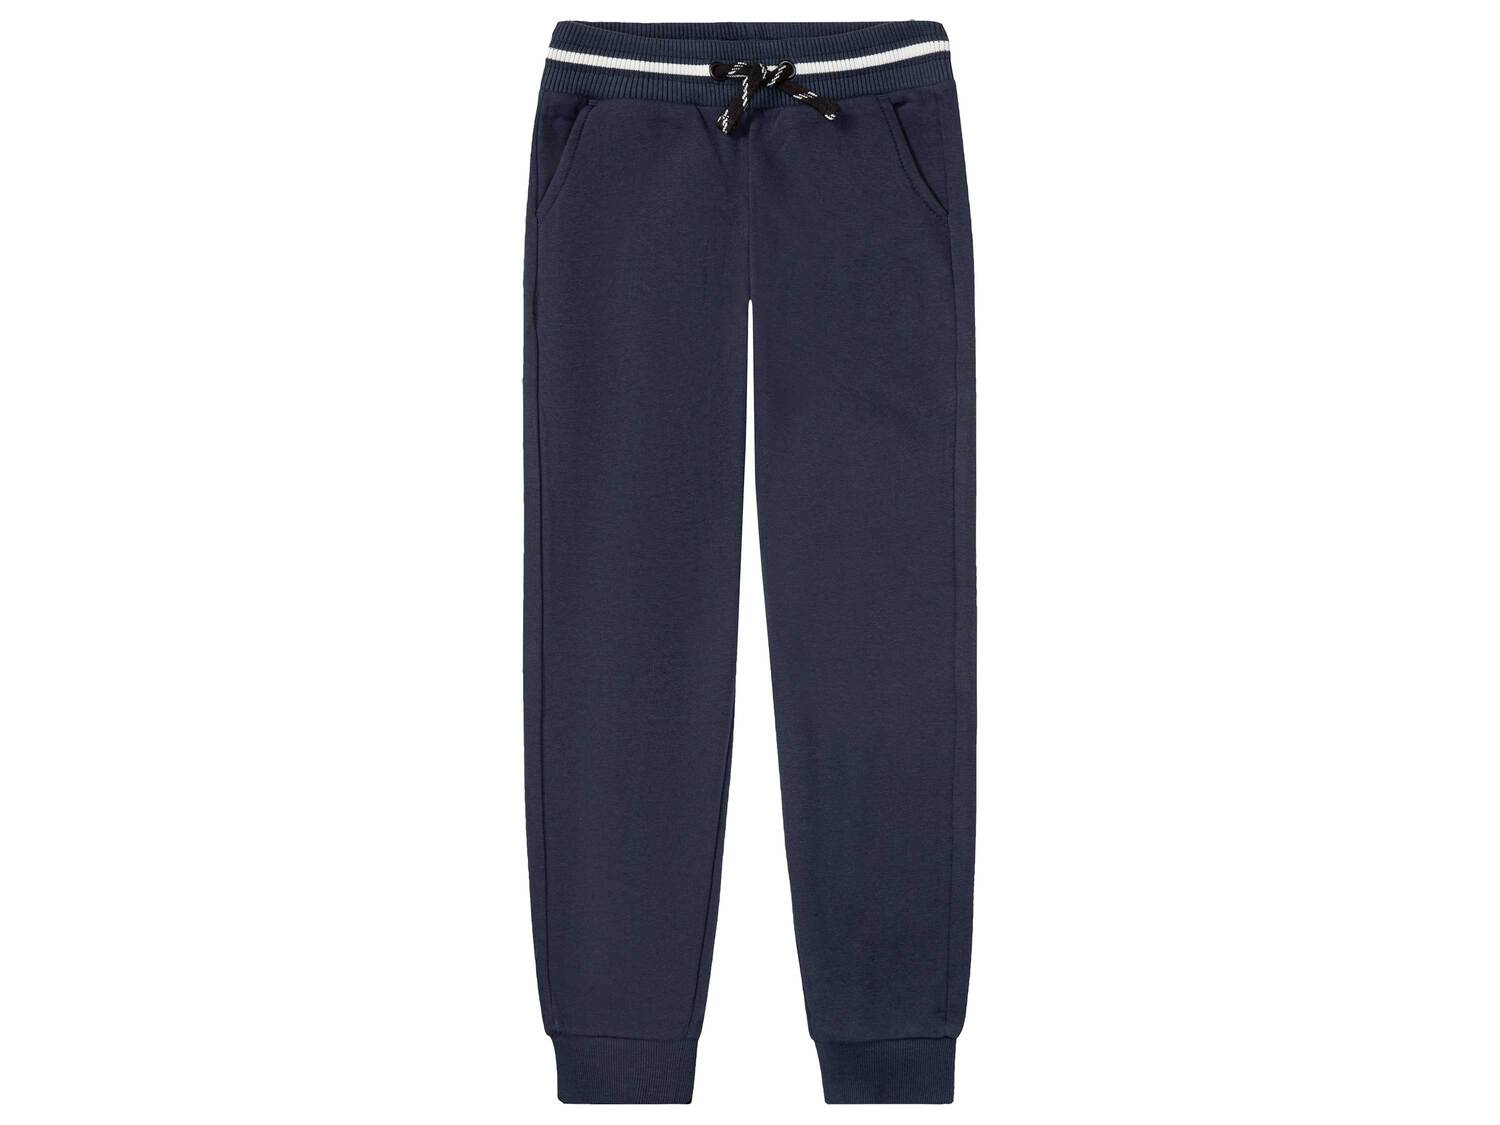 Pantalon molletonné , le prix 8.99 &#8364; 
- Du 8-10 ans (134/140 cm) au 12-14 ...